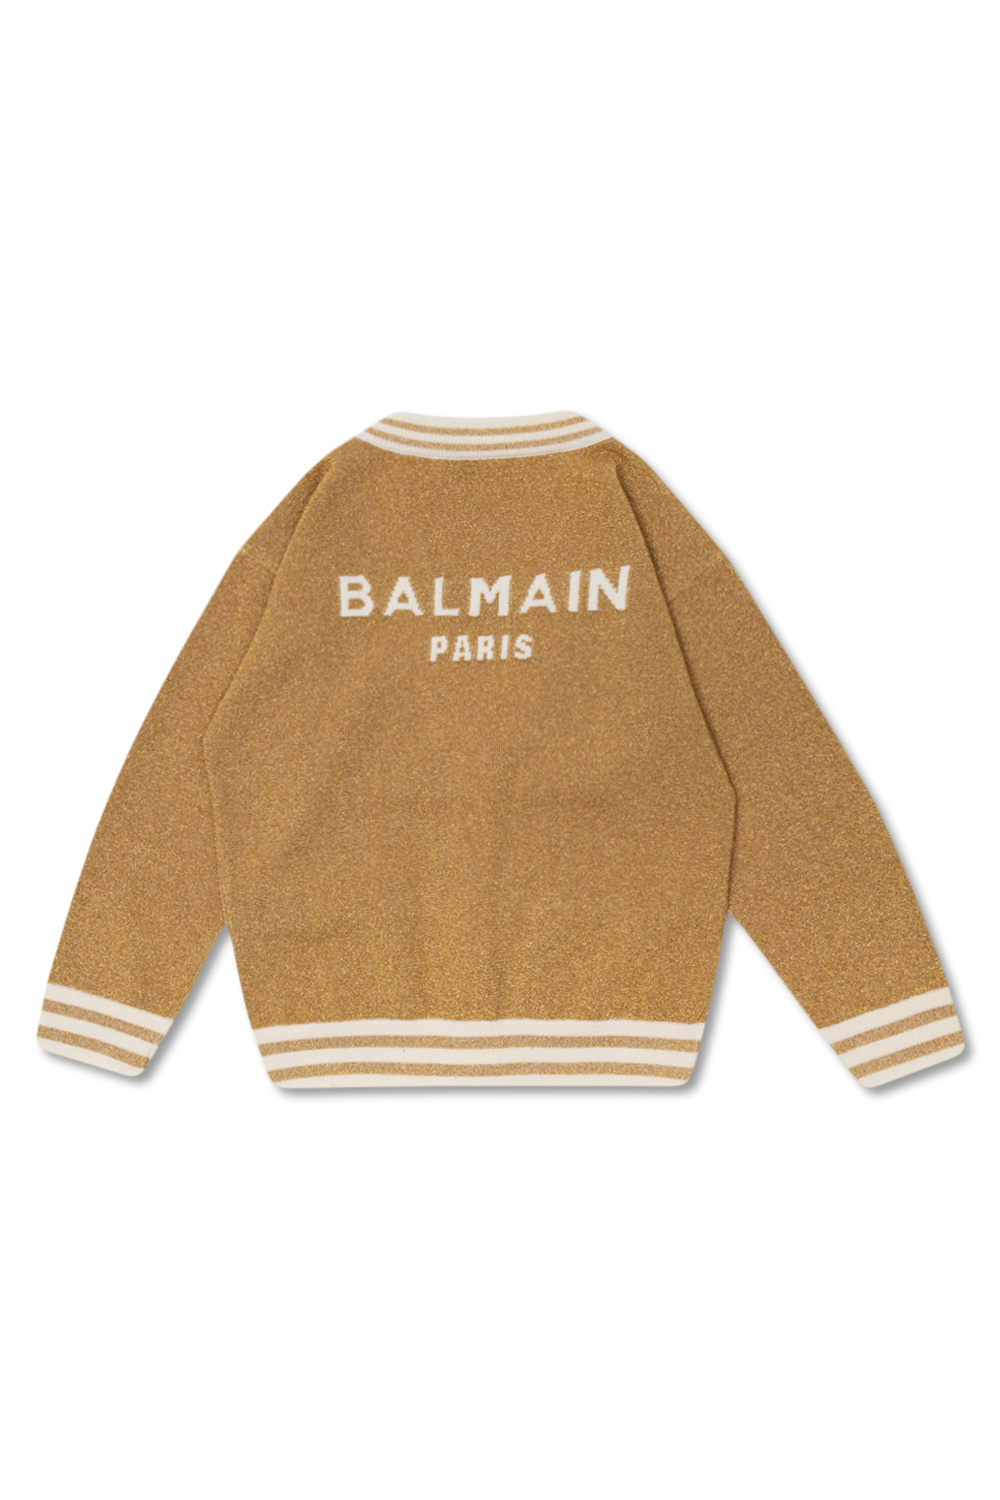 Balmain Kids Balmain cropped flocked logo detail hoodie